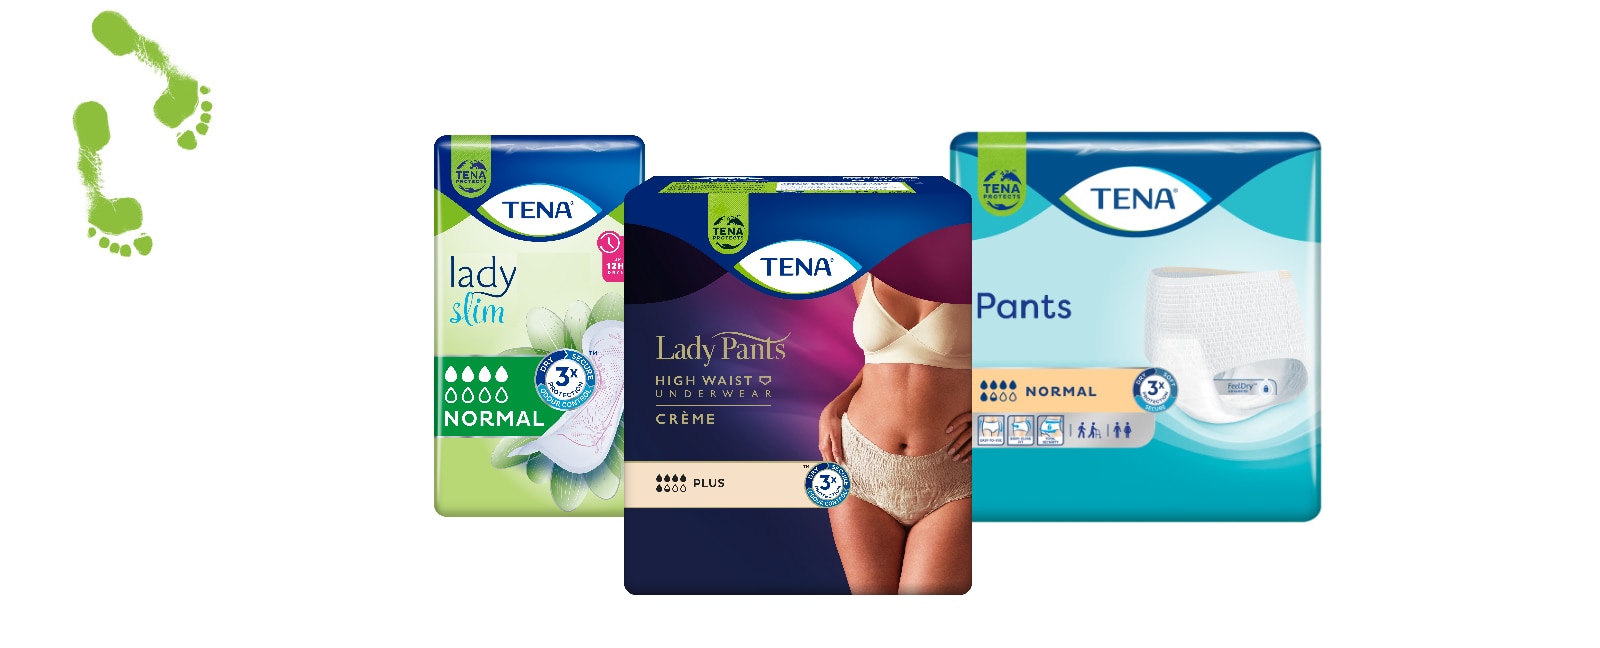 TENA Lady Pants inkontinencia fehérnemű, TENA Lady Slim betét és TENA Pants Normal termékképe